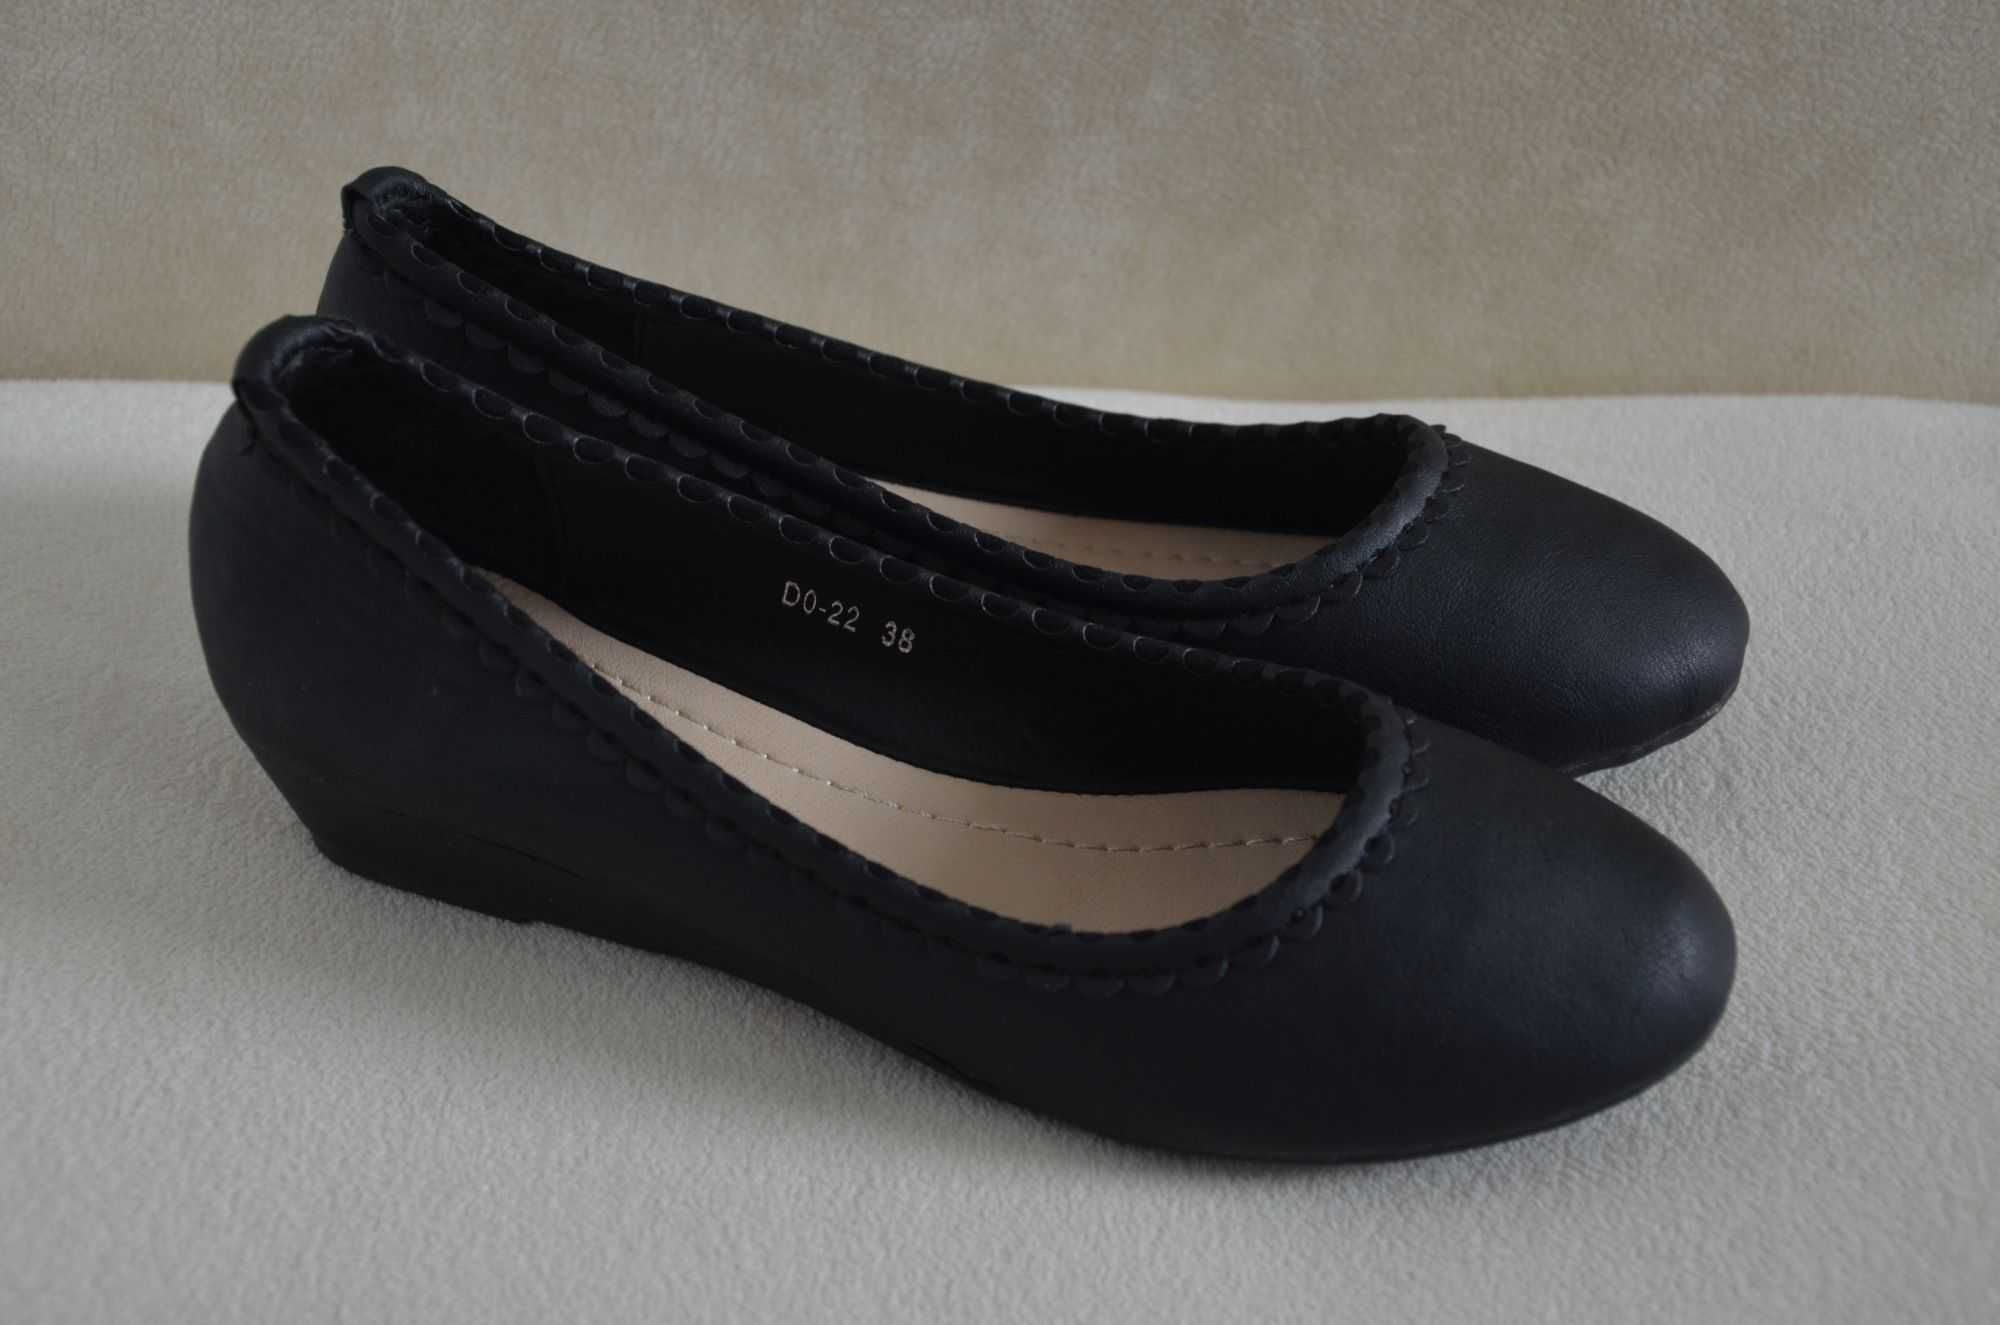 Lucky Shoes nowe buty czółenka półbuty damskie ekoskóra czarne 38 24cm